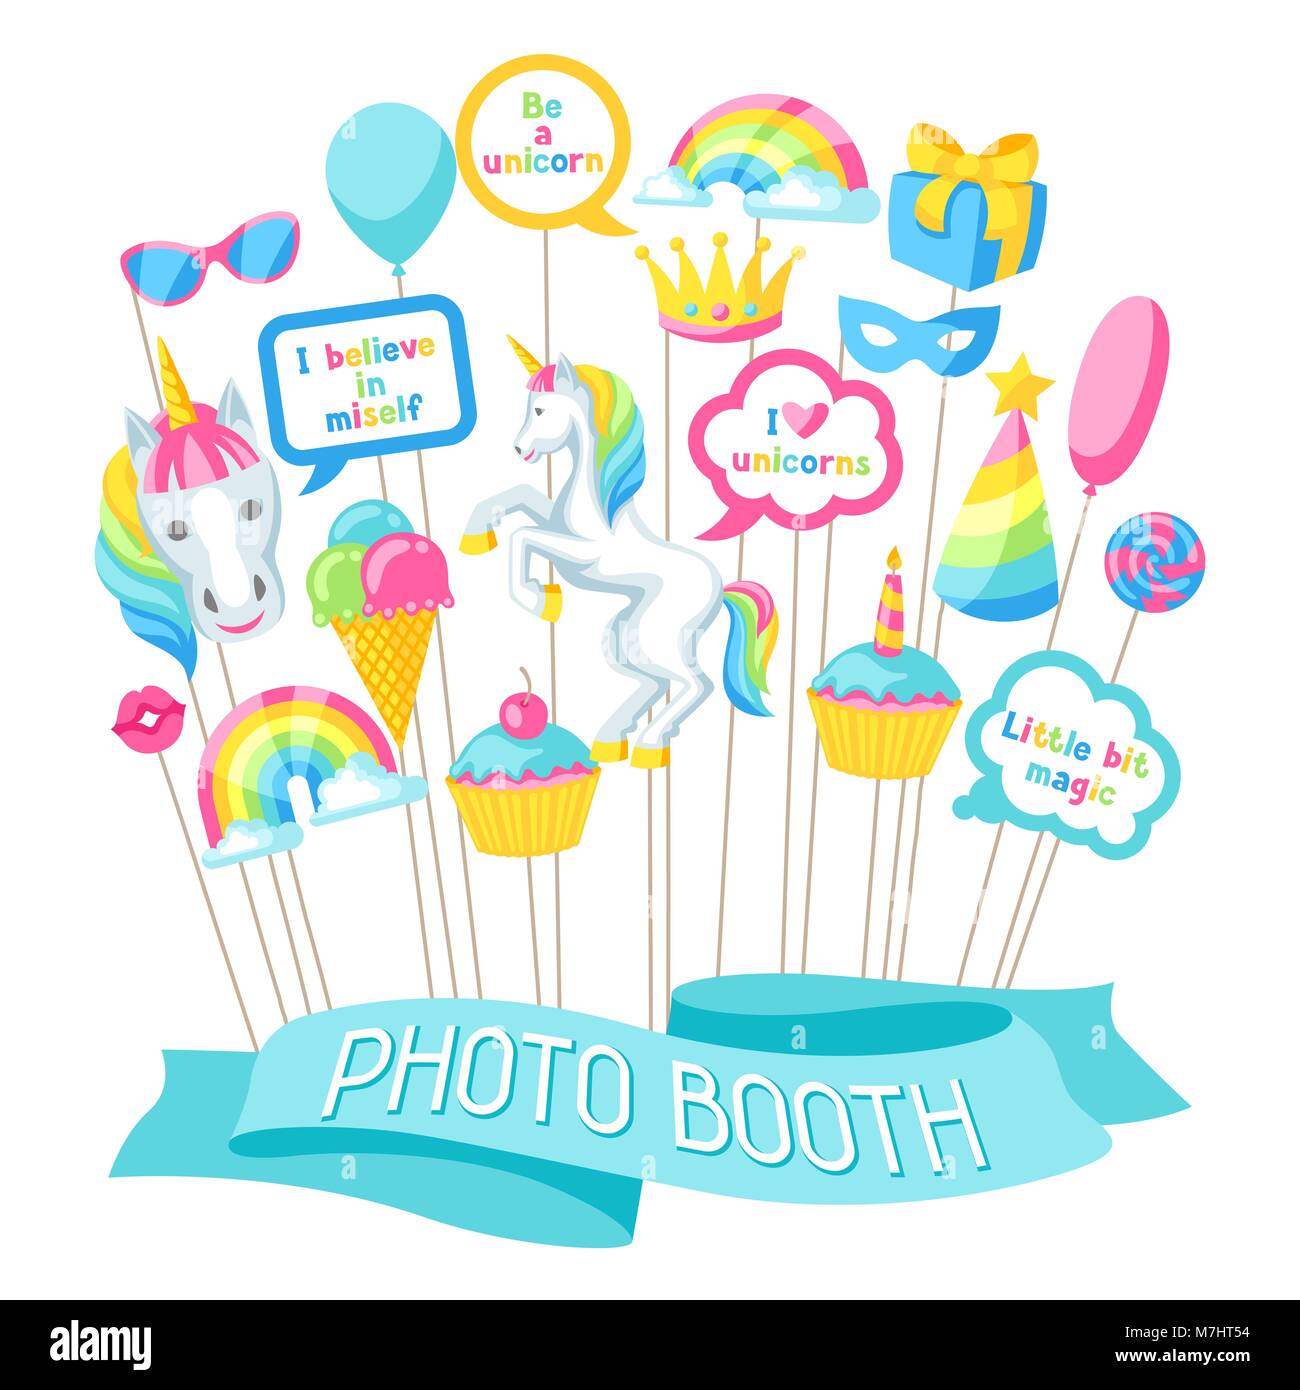 Buon compleanno Photo Booth puntelli. Gli elementi di fantasia e oggetti  per festival e party Immagine e Vettoriale - Alamy